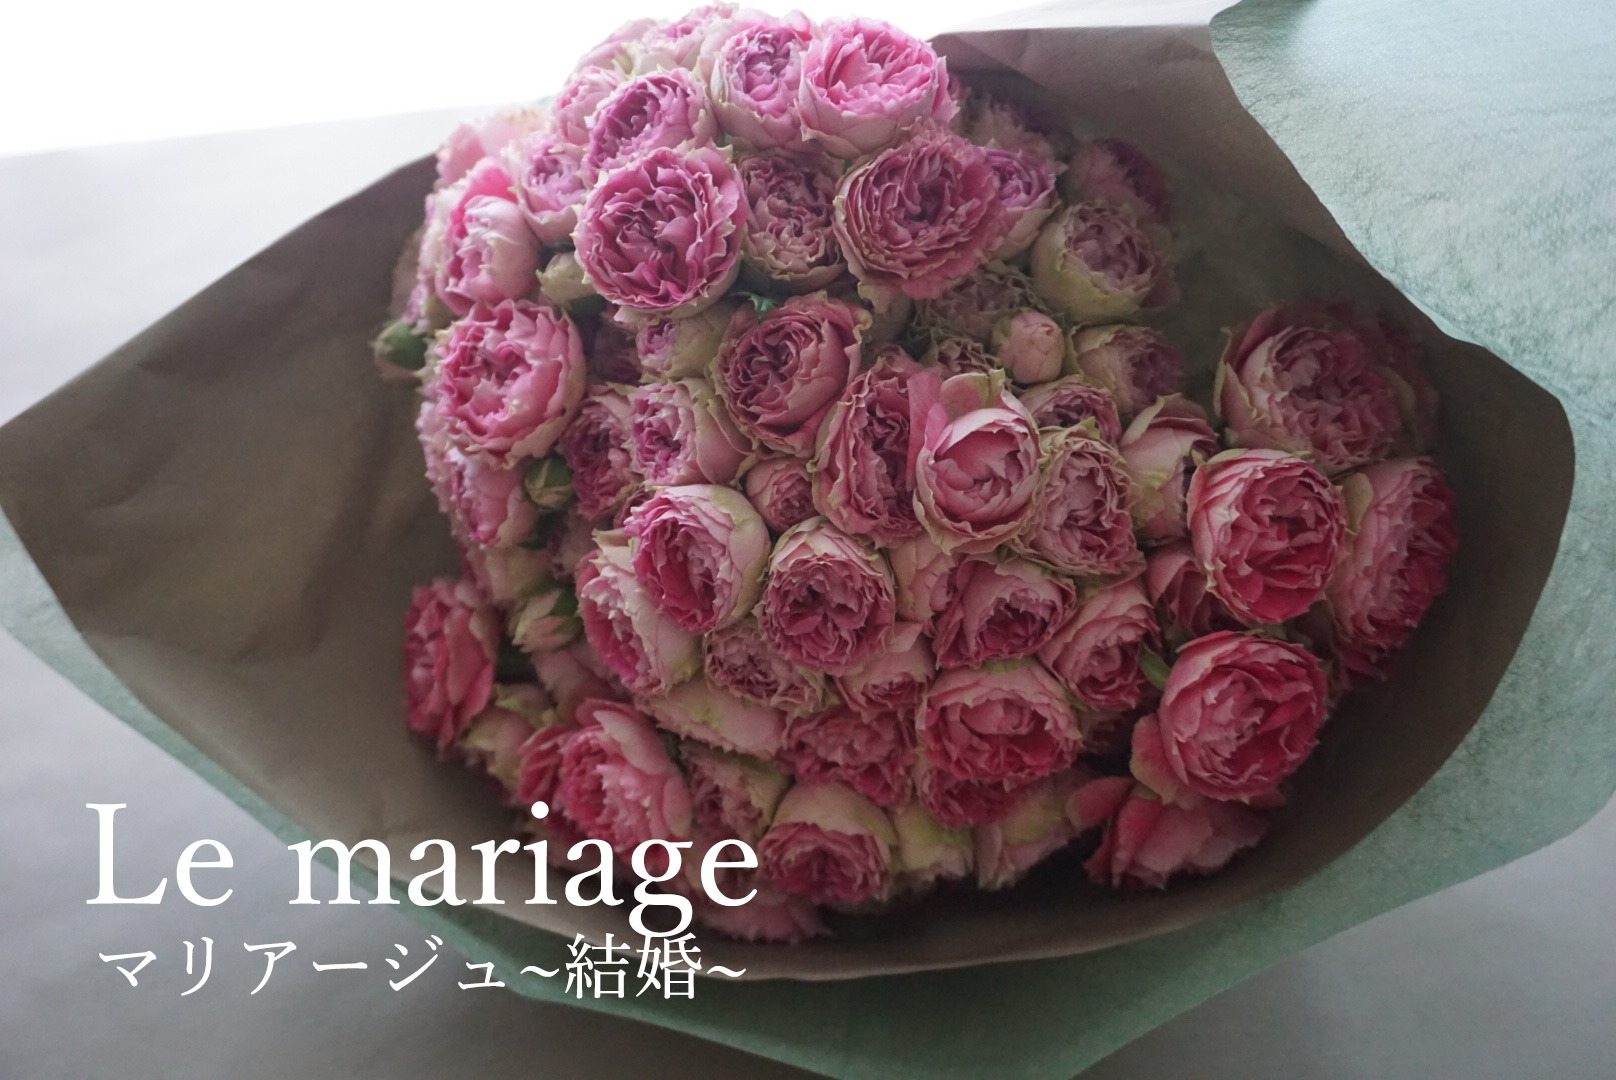 彼女にサプライズ！！彼女の好きな花であなたらしいプロポーズの花束を　Le mariage　マリアージュ「結婚」